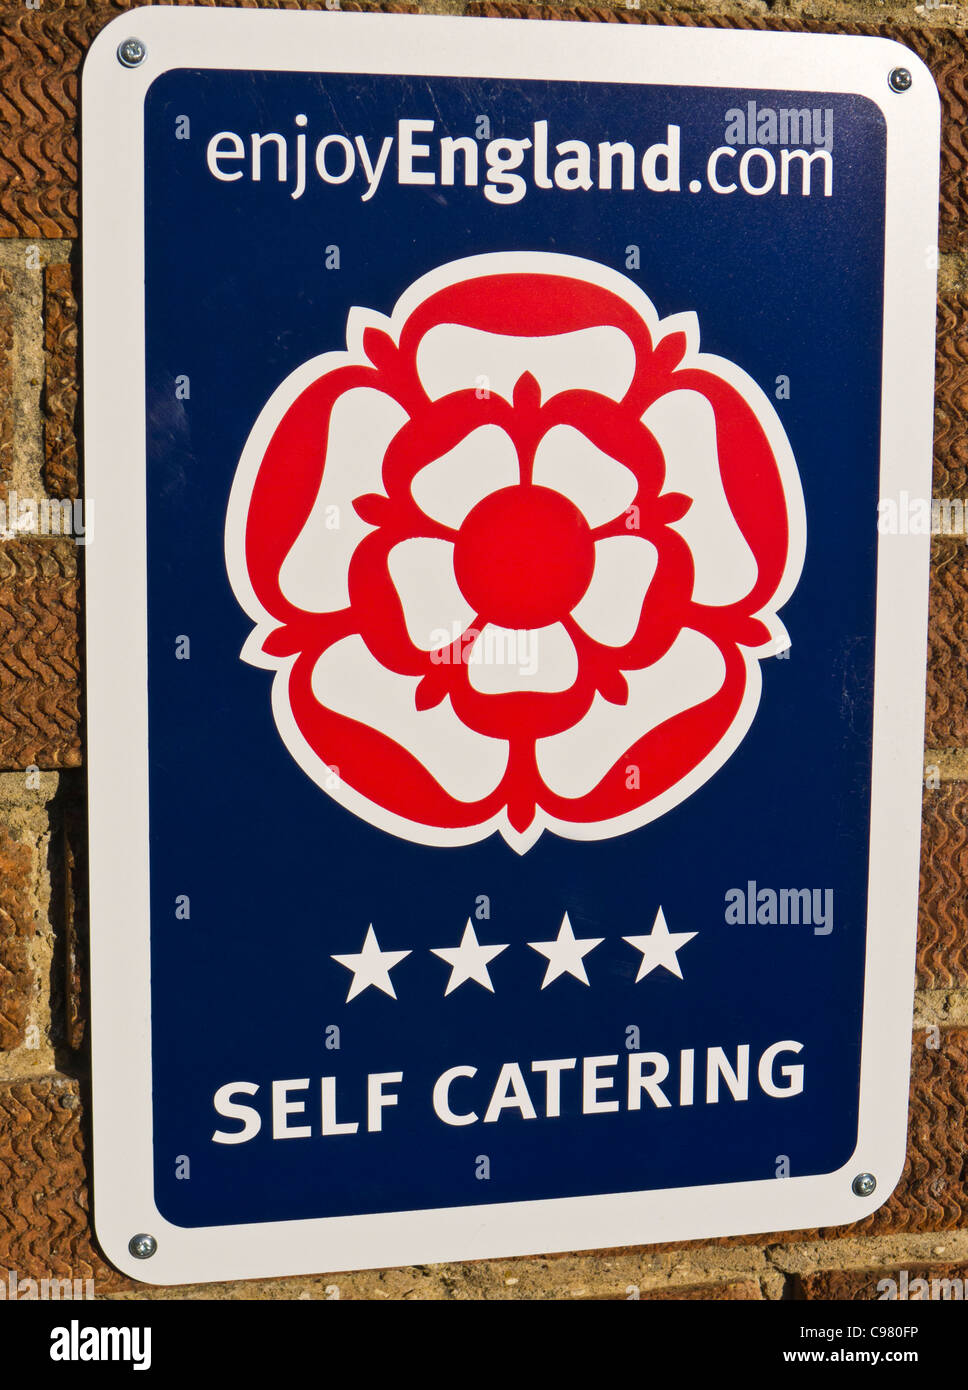 Disfrute de Inglaterra cuatro estrellas signo de self-catering. Foto de stock